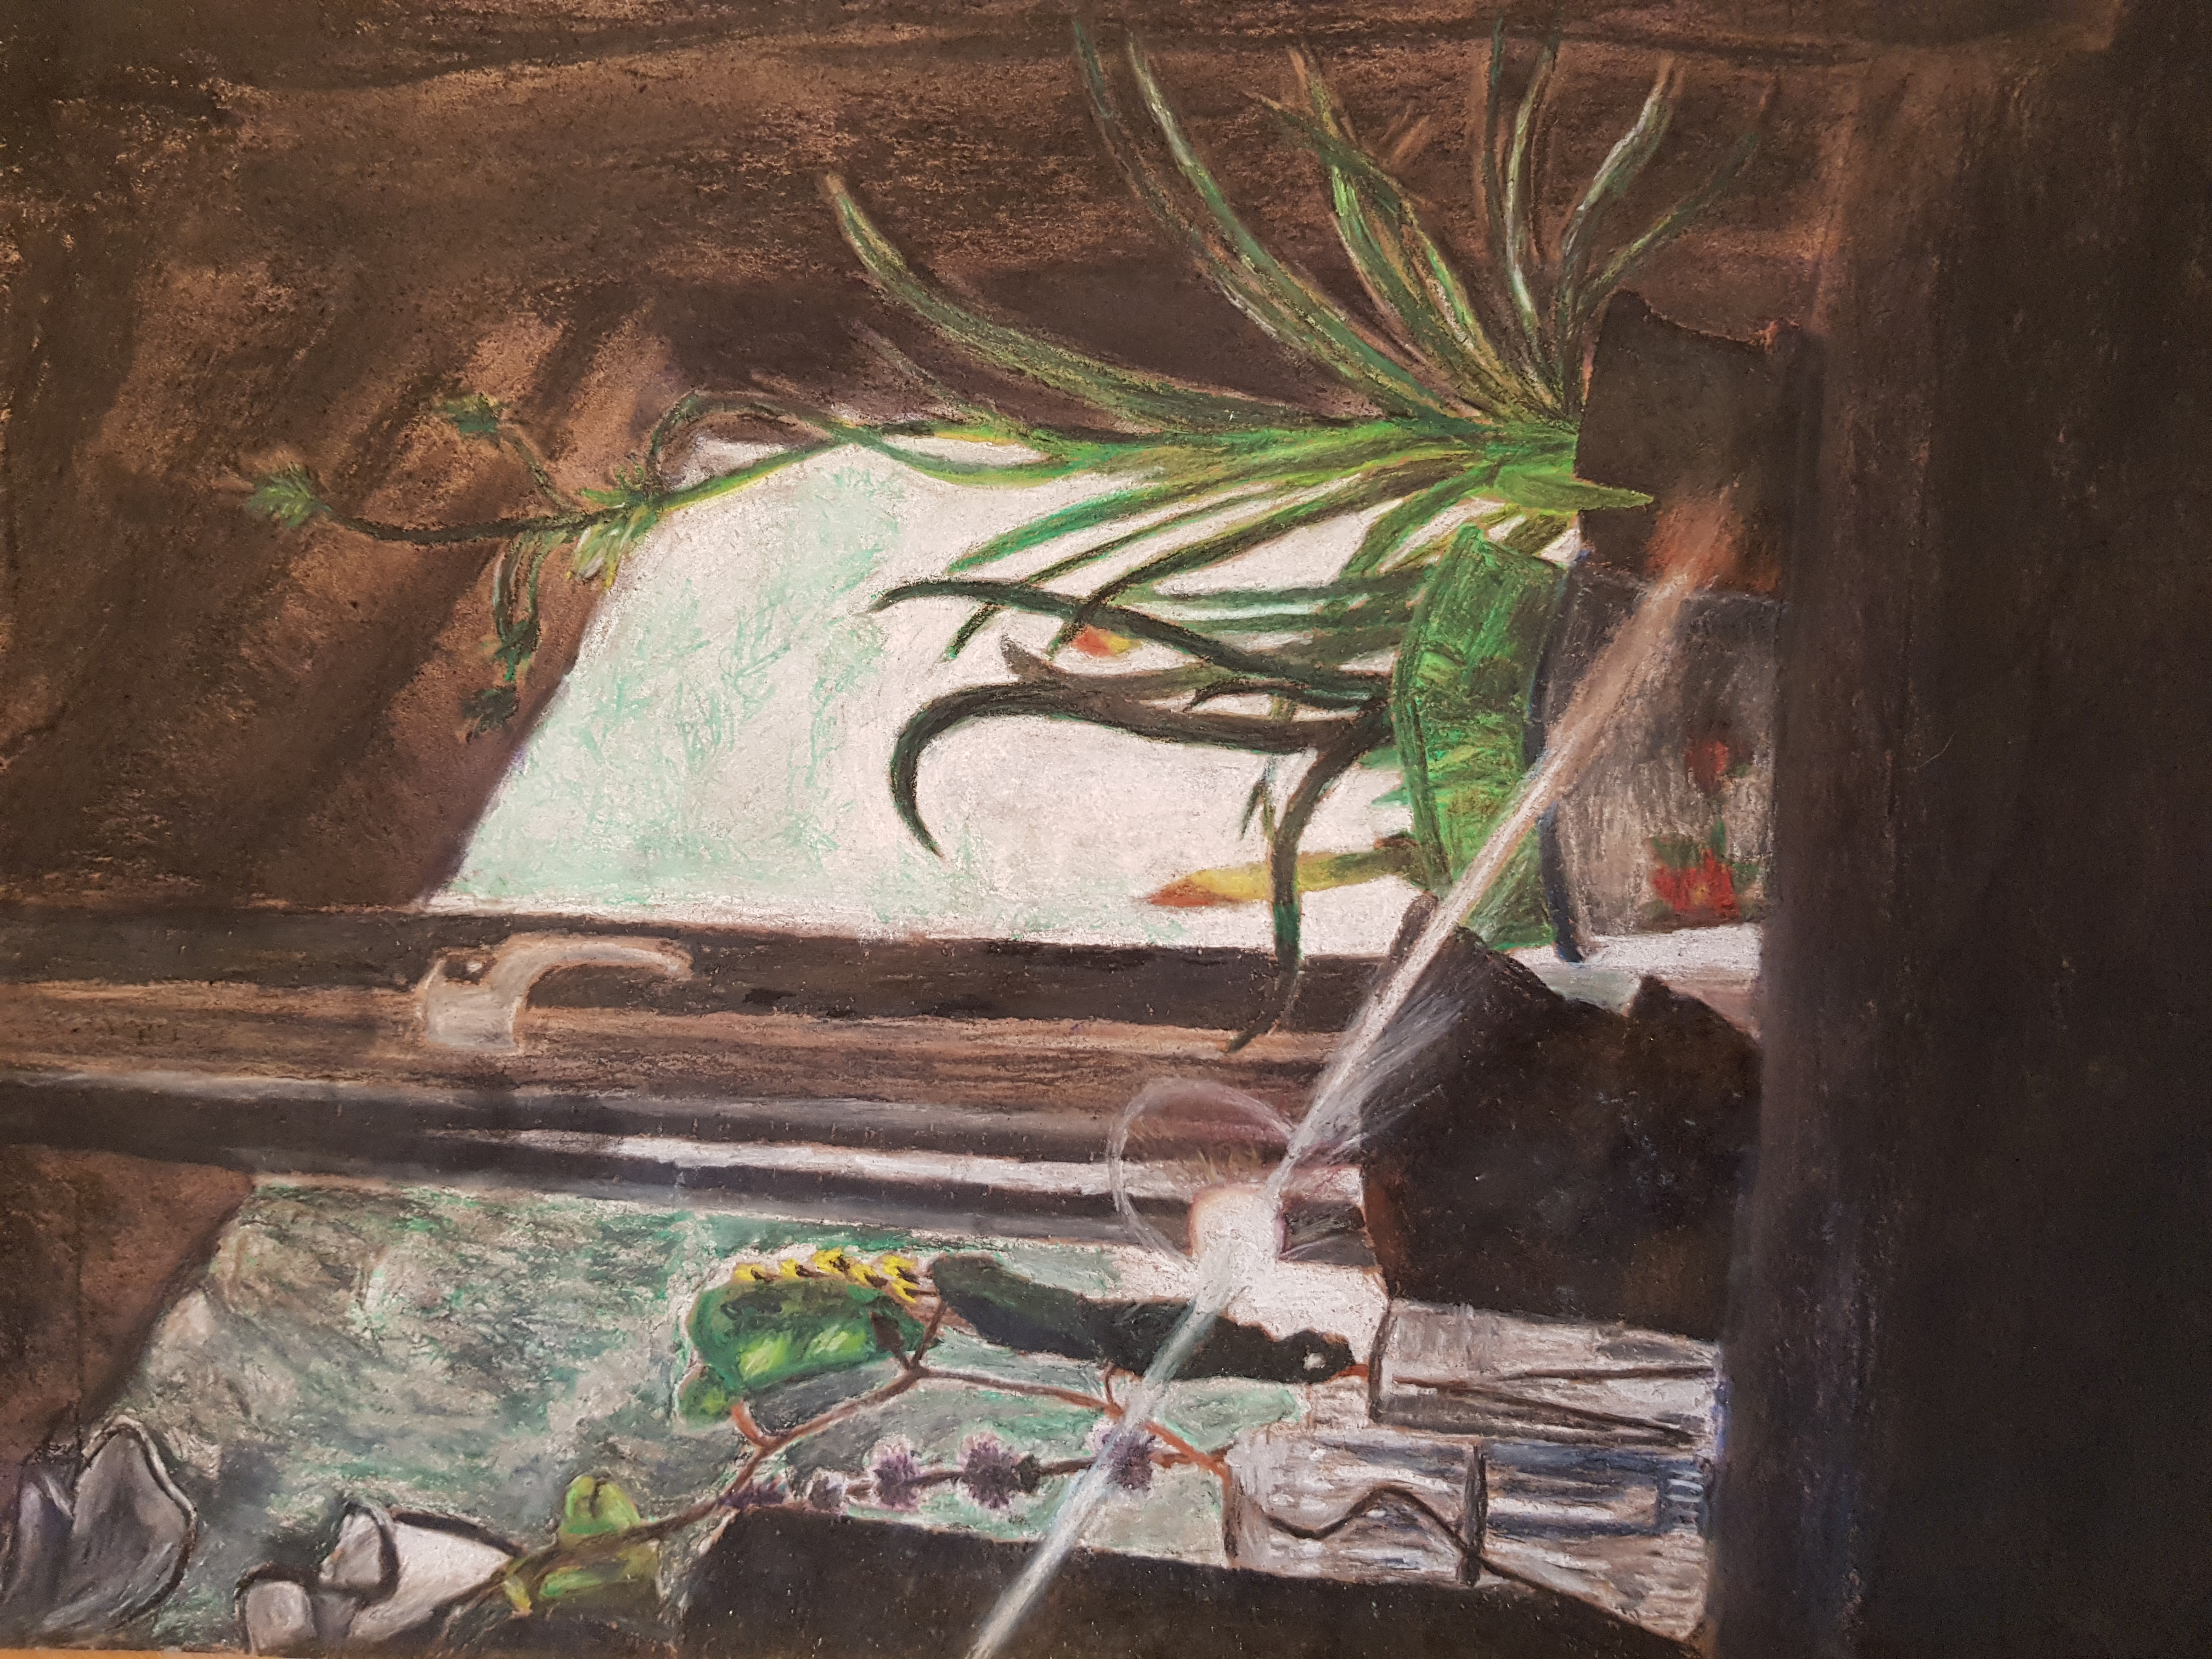 'Windowsill in Sunlight' by Juliana (16) from Kilkenny